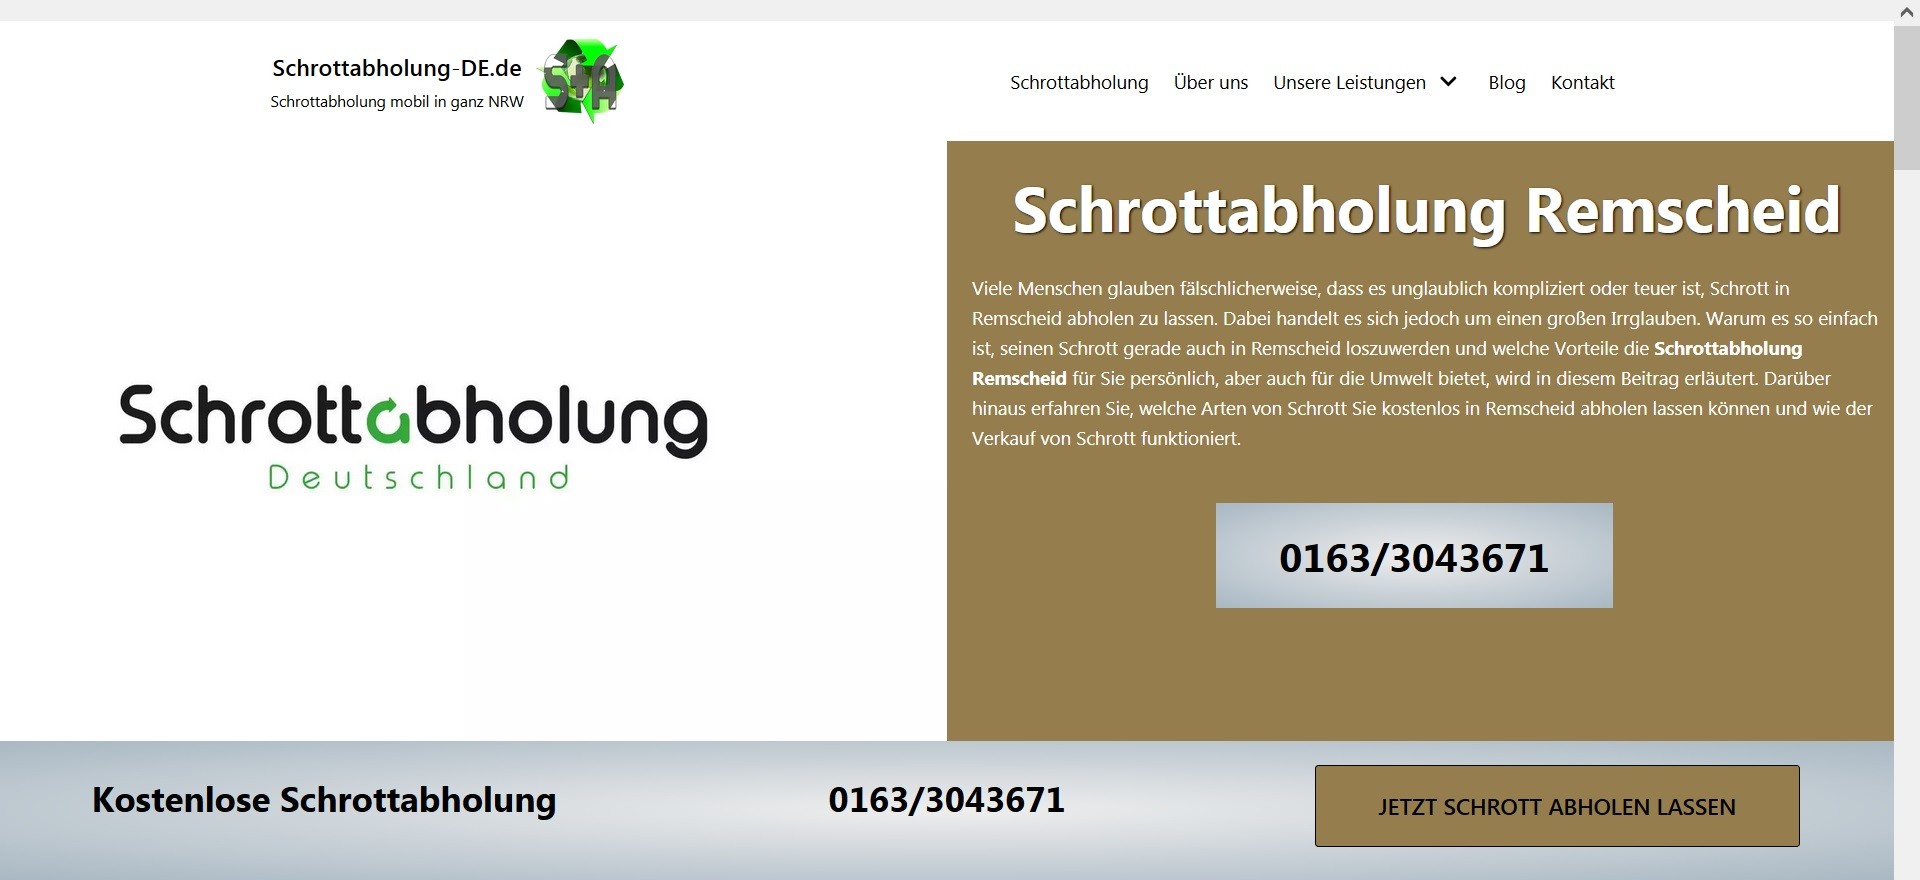 Kostenlose Schrottabholung in ganz Nordrhein-Westfalen – Online Altmetall verkaufen Bottrop